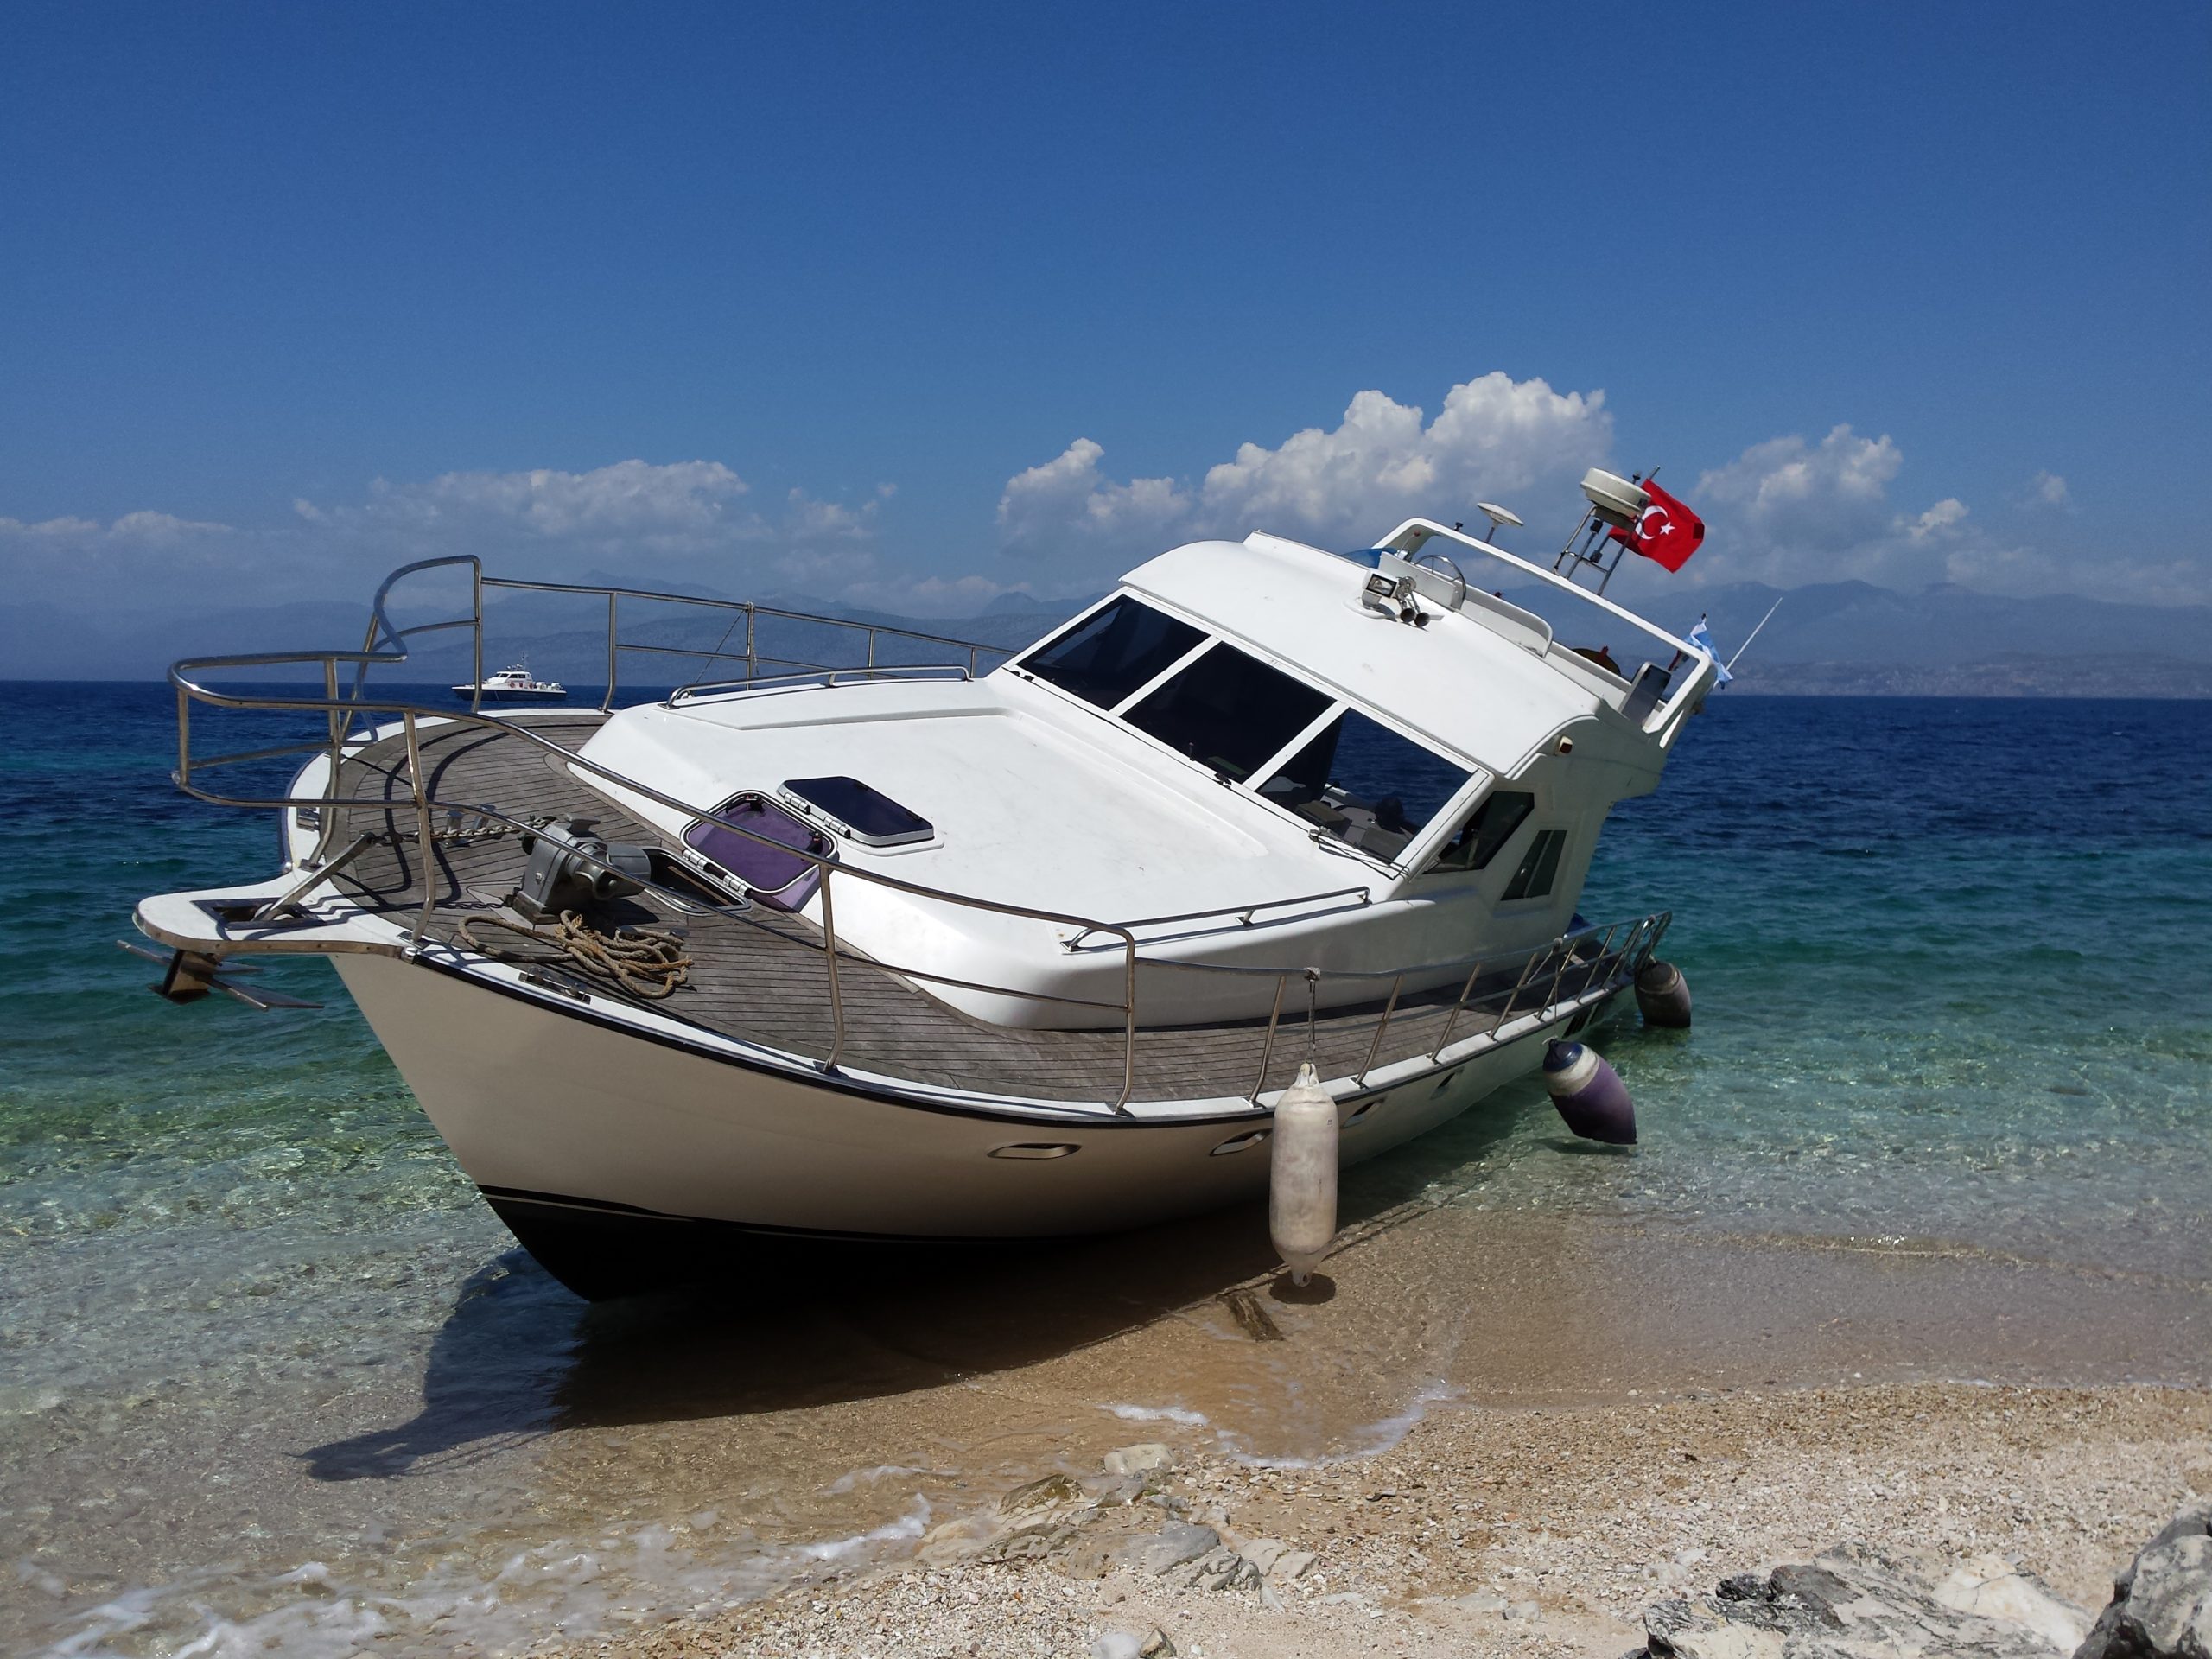 Τουρκική θαλαμηγός μετέφερε ναρκωτικά από την Αλβανία στην Κέρκυρα – ΦΩΤΟ